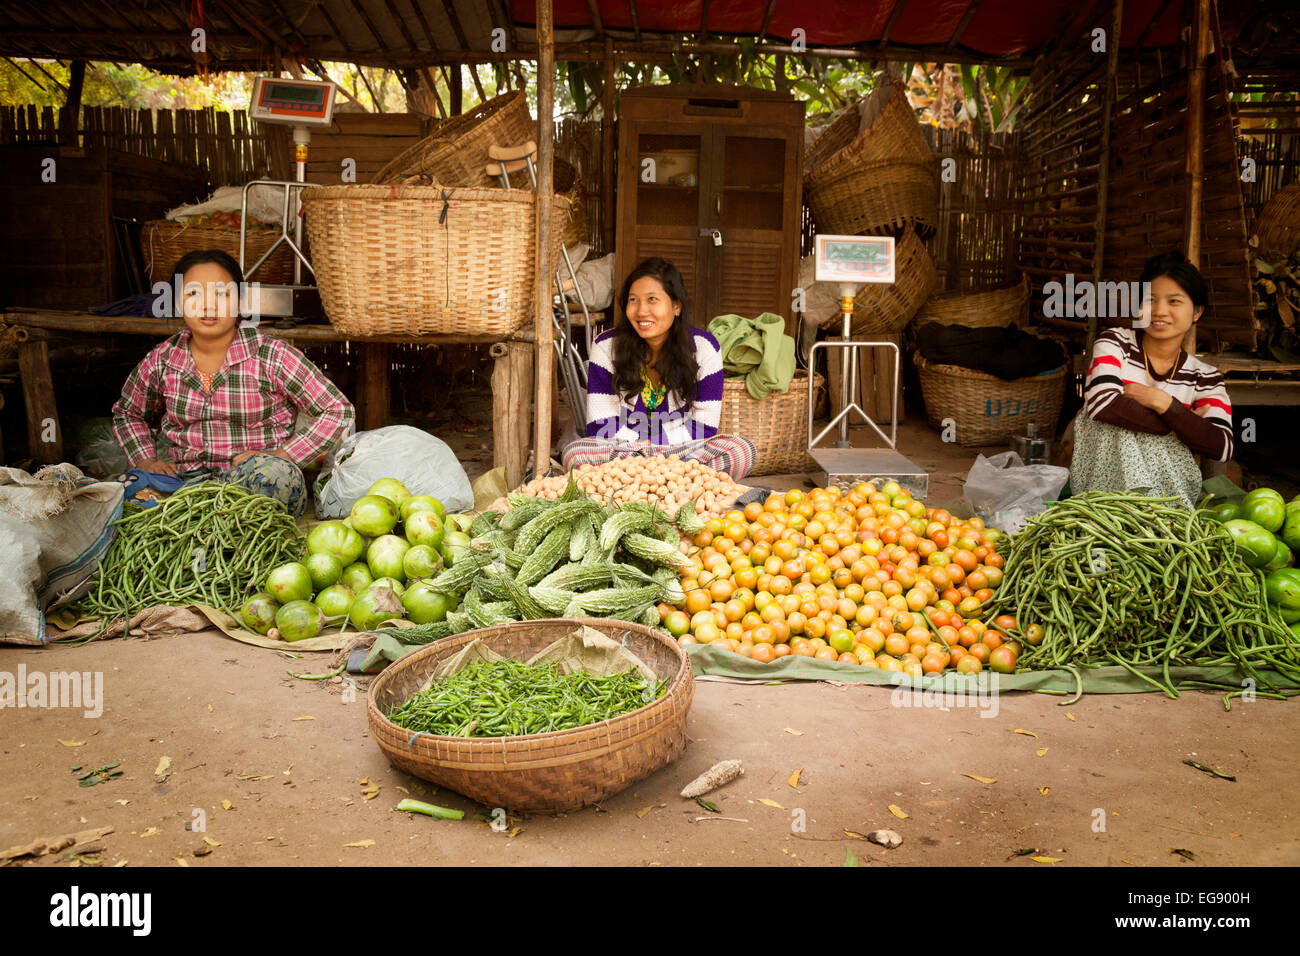 Mujeres birmanas vendiendo alimentos a su puesto en un mercado de aldea, Bagan, Myanmar ( Birmania ), Asia Foto de stock